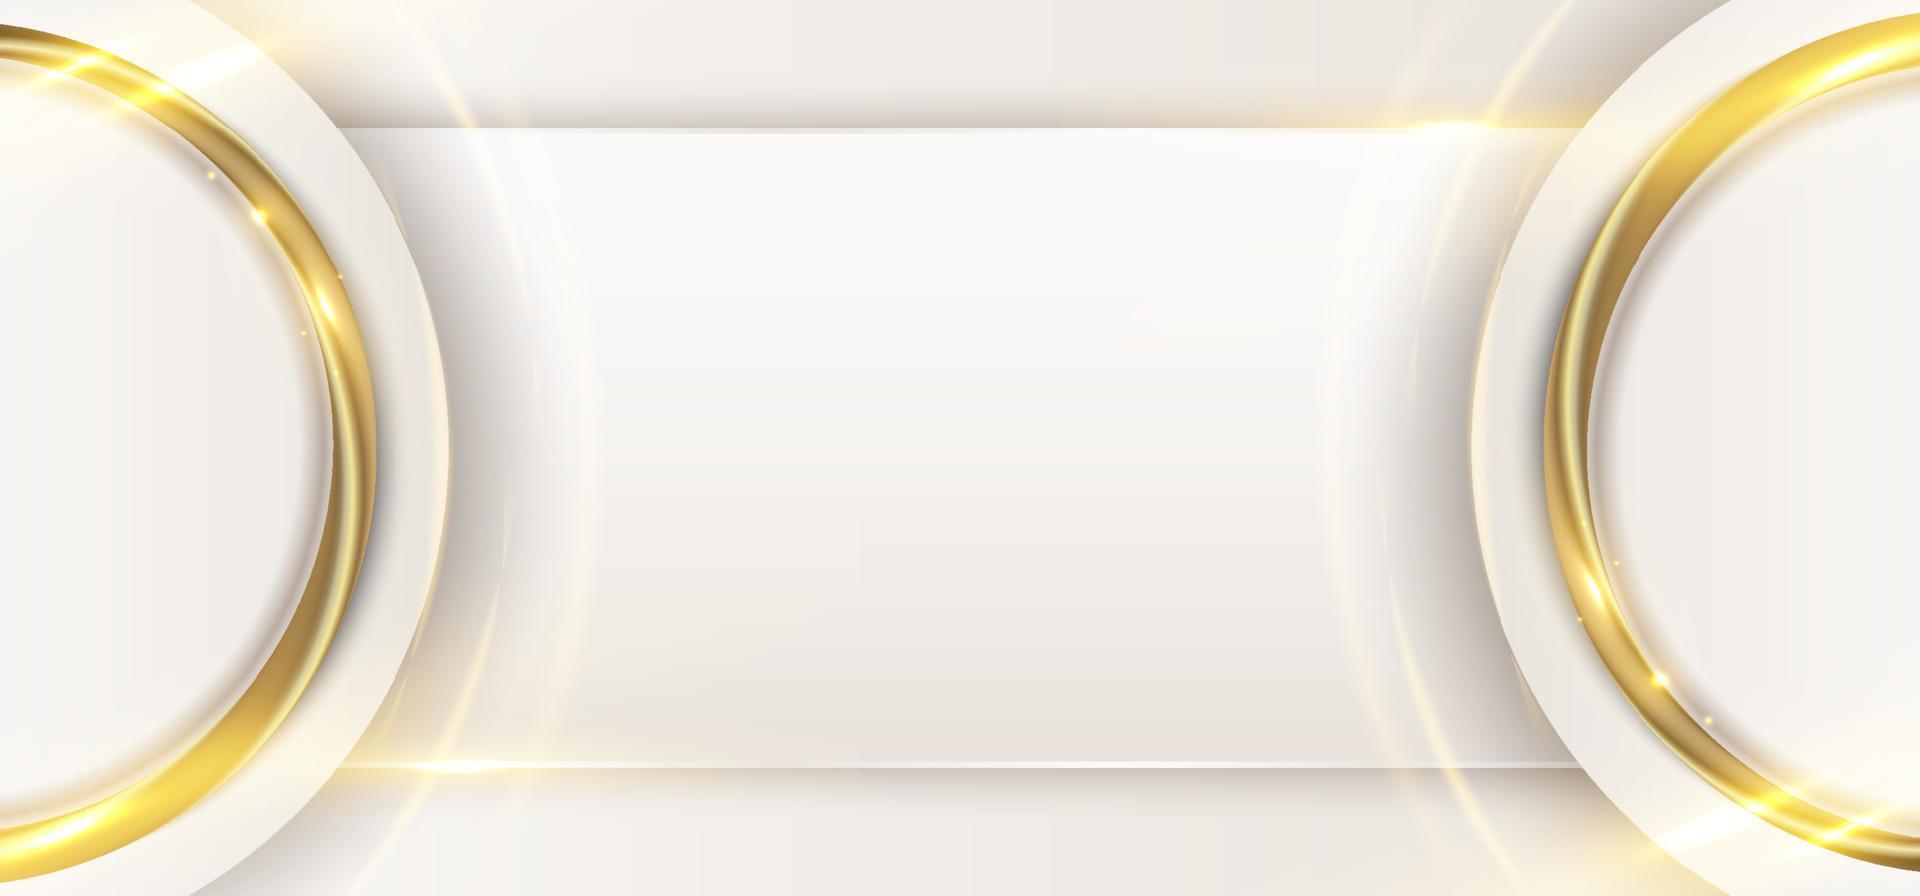 círculo branco elegante abstrato com linhas douradas 3d anel arredondado e luz brilhando no estilo de luxo de fundo limpo vetor